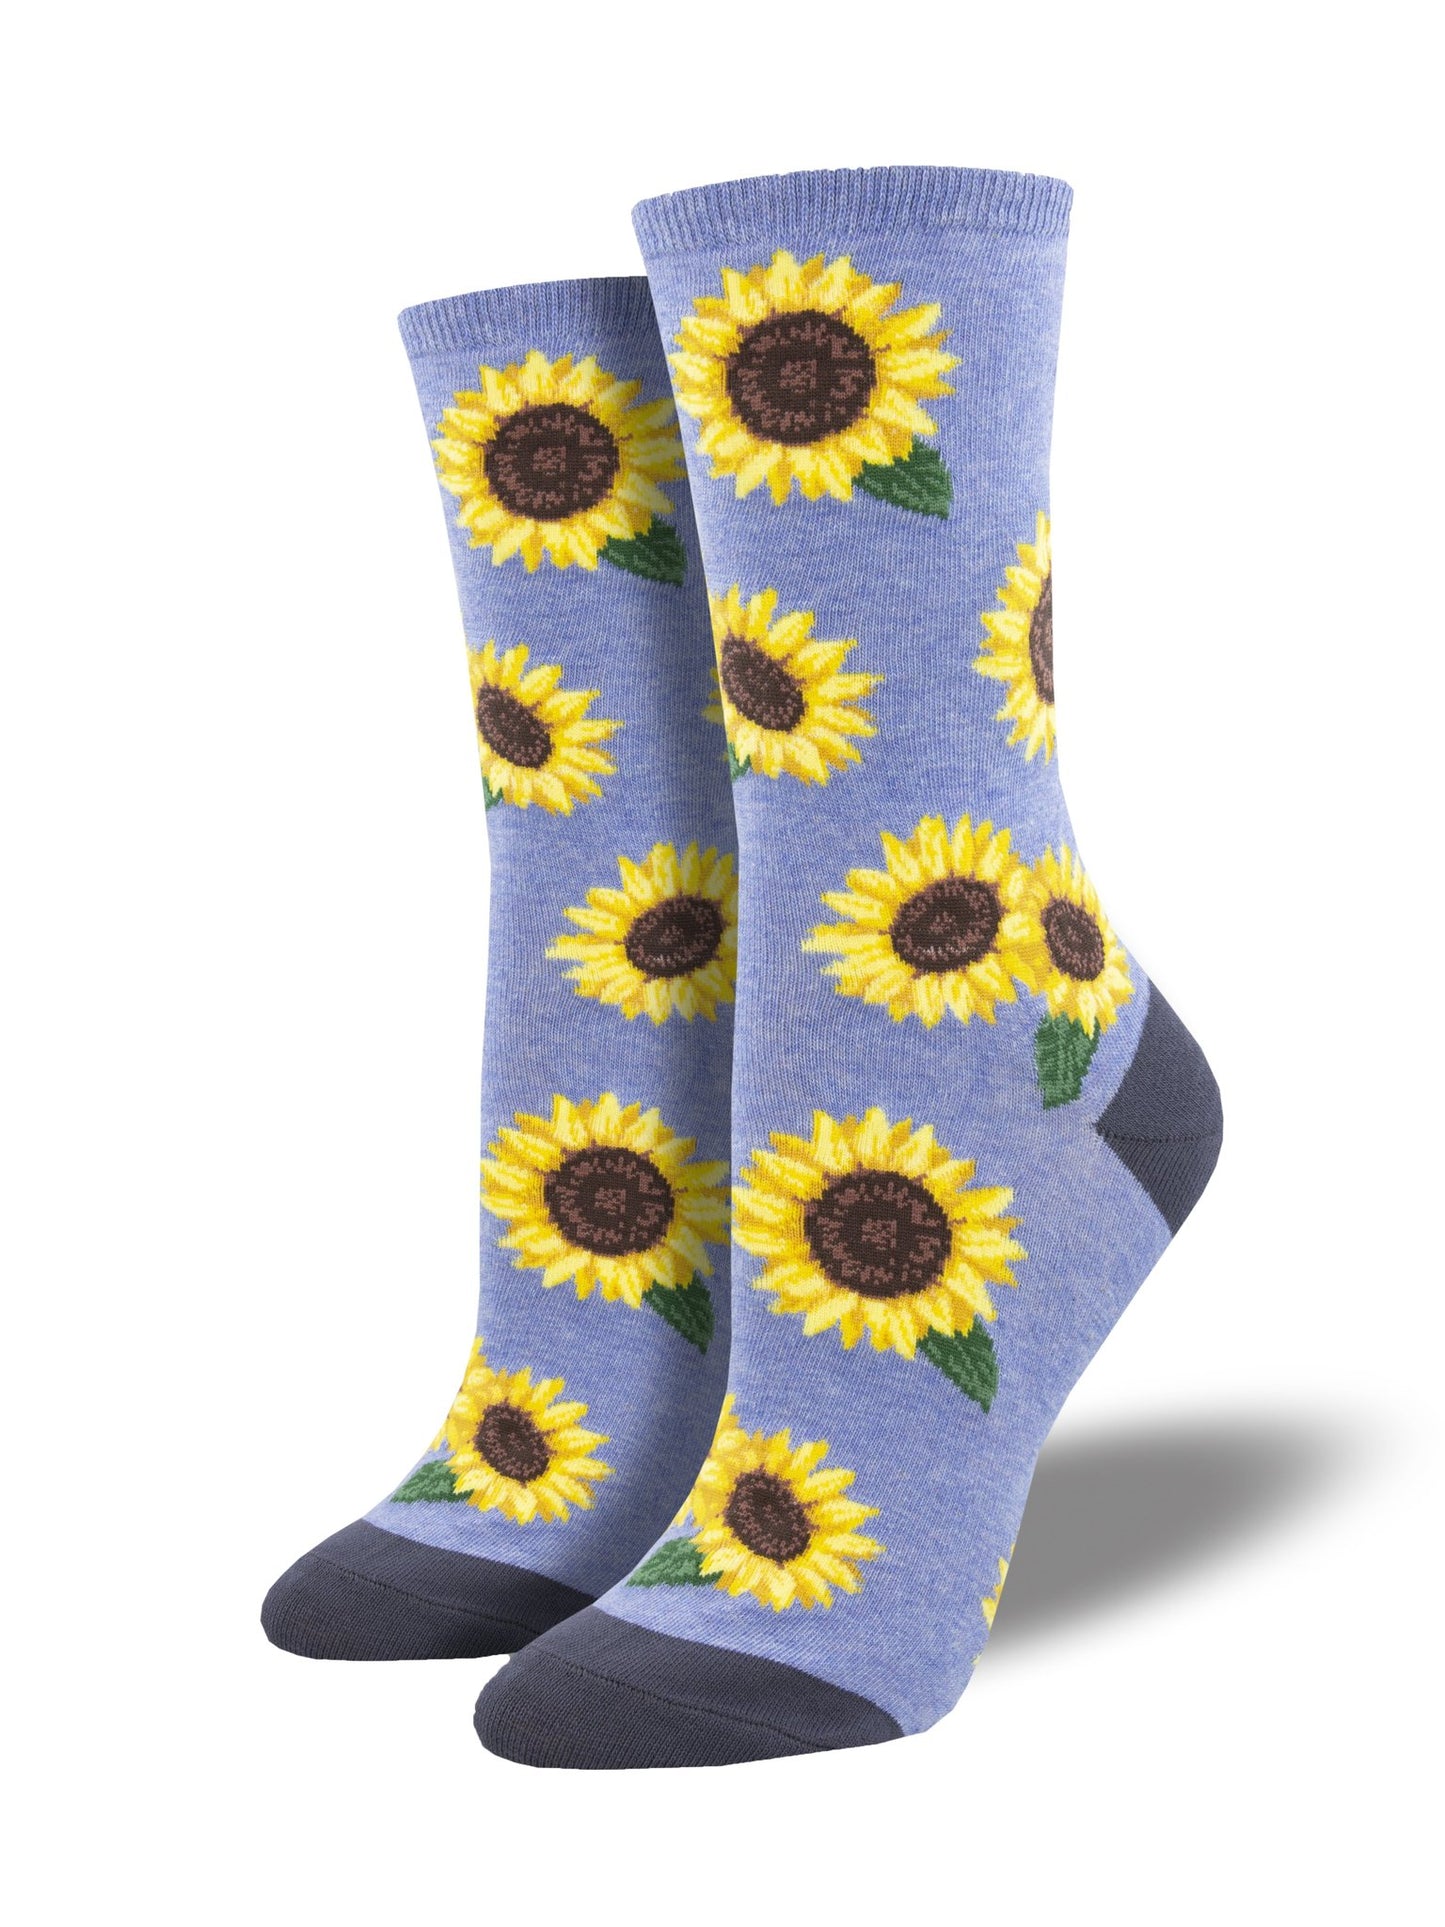 Sunflower women's socks blue